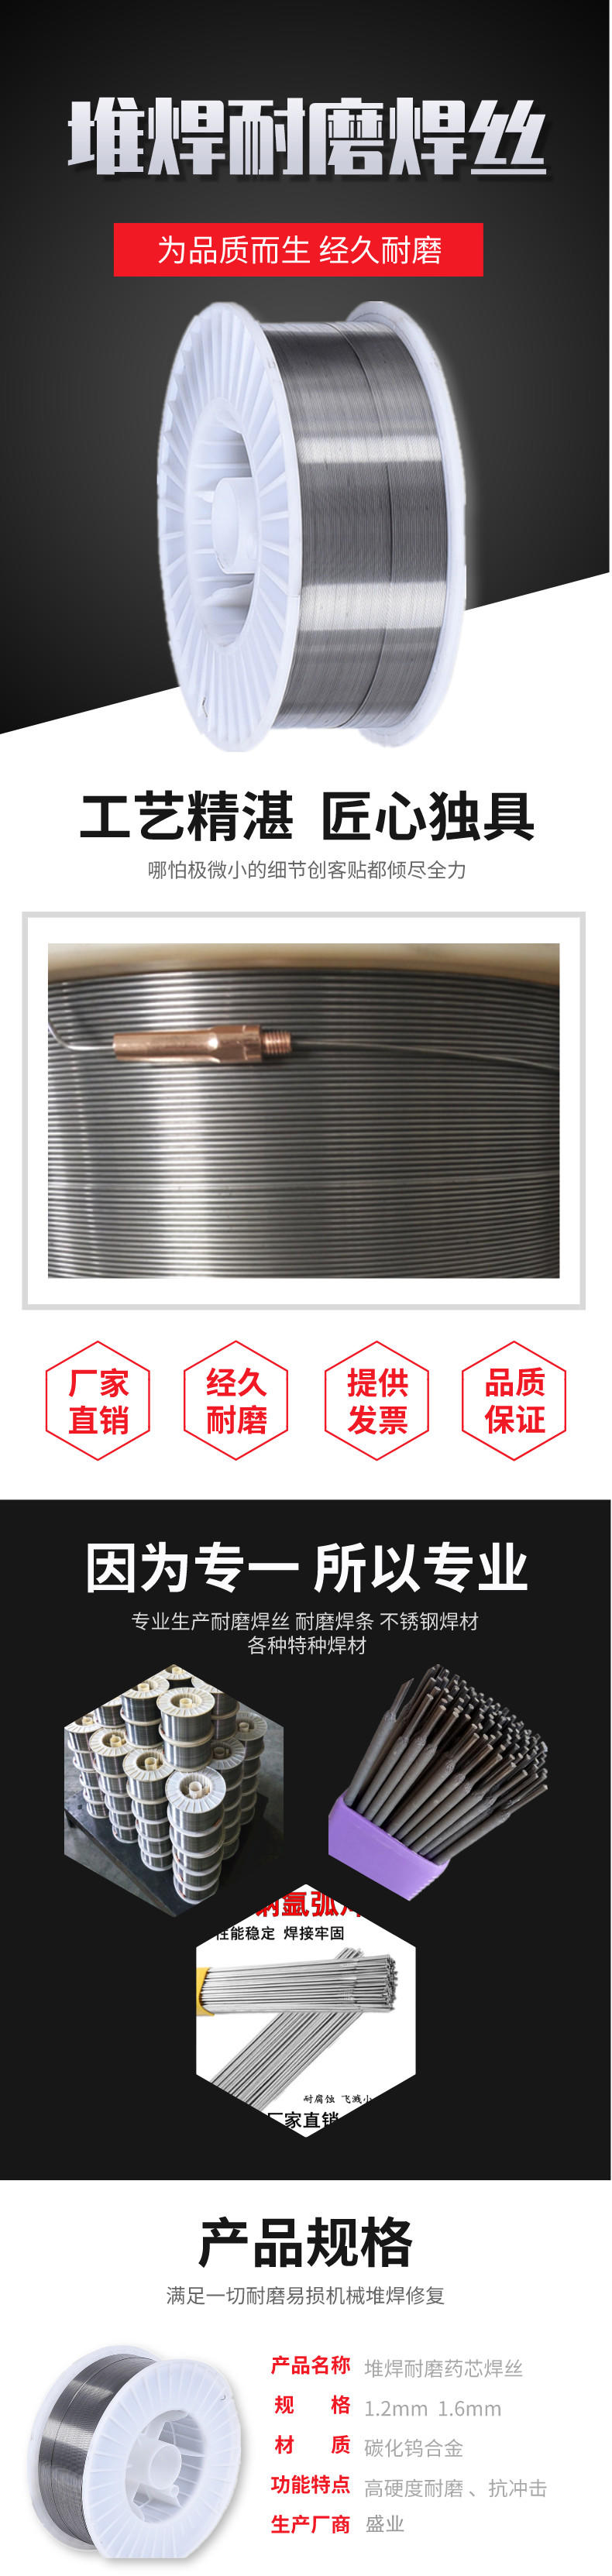 耐磨焊丝 YD618堆焊药芯焊丝 D618合金耐磨焊丝 1.2示例图3